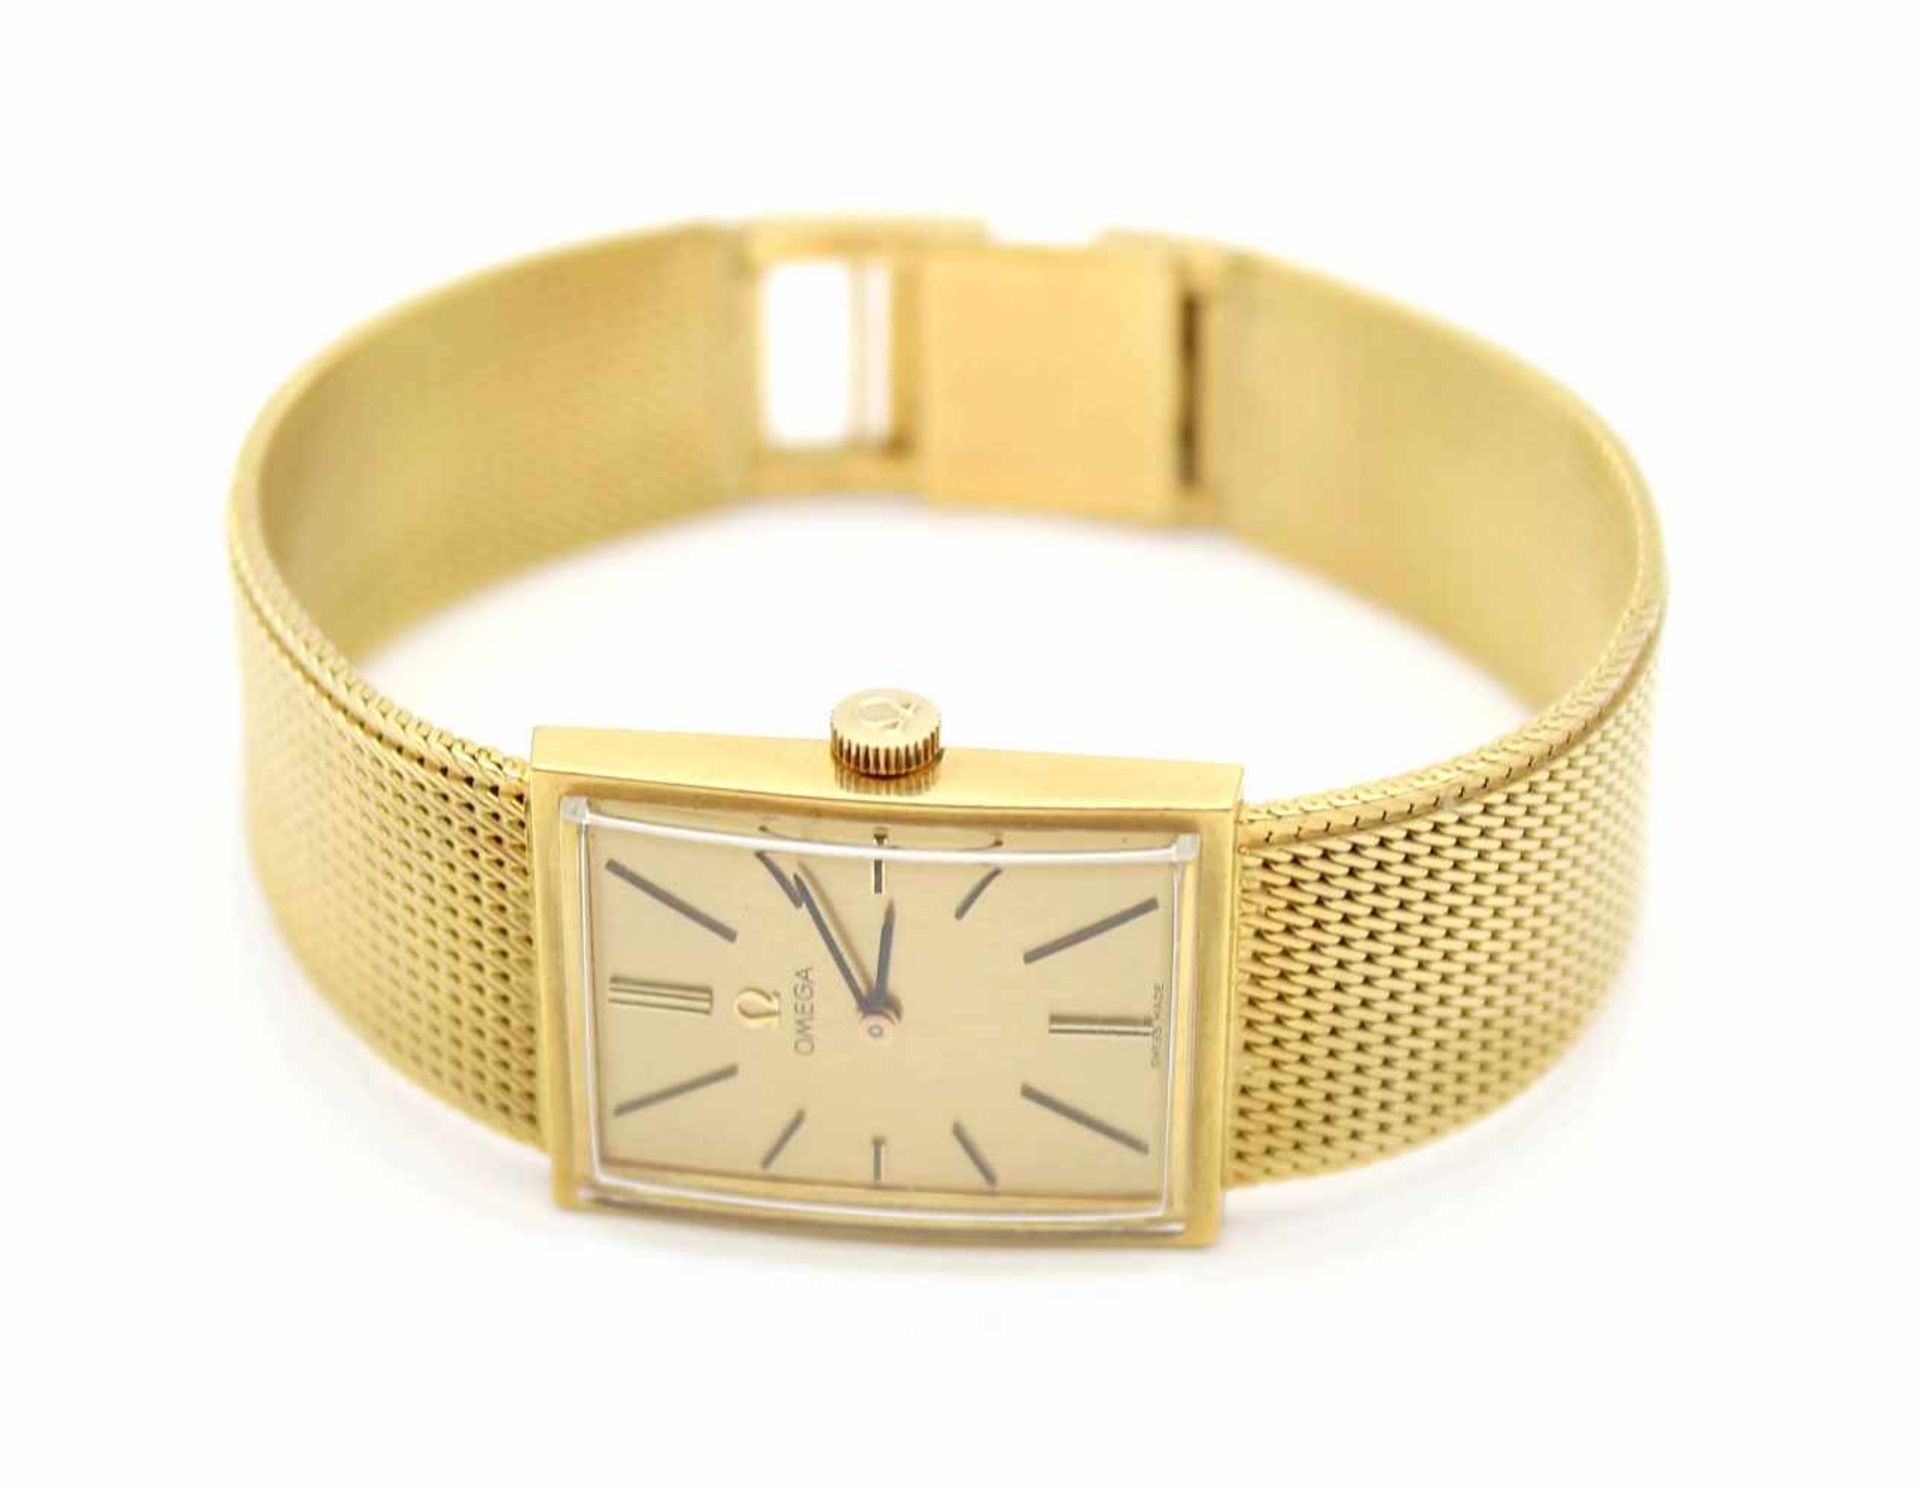 Armbanduhr Omega aus 750er Gold im Omega Etui. Die Uhr ist gangbar. Eine Revision wird empfohlen.